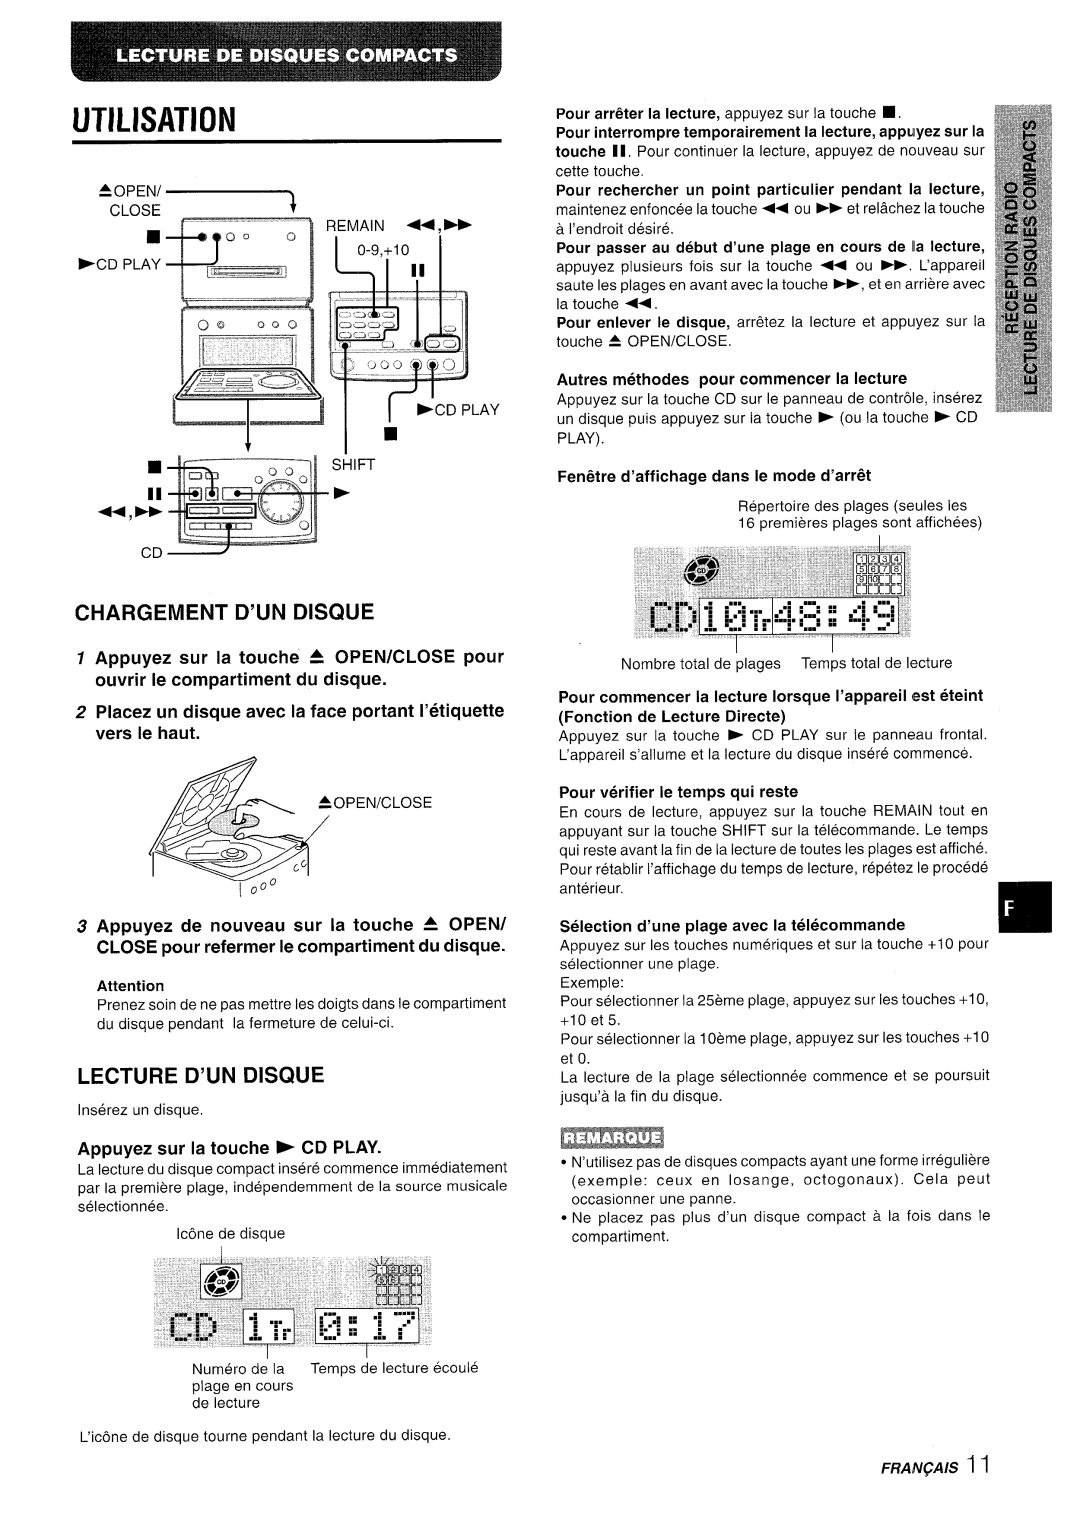 Aiwa XR-MD95 manual Utilisation, Chargement D’Un Disque, Lecture D’Un Disque, Appuyez sur la touche * CD PLAY, Pour 